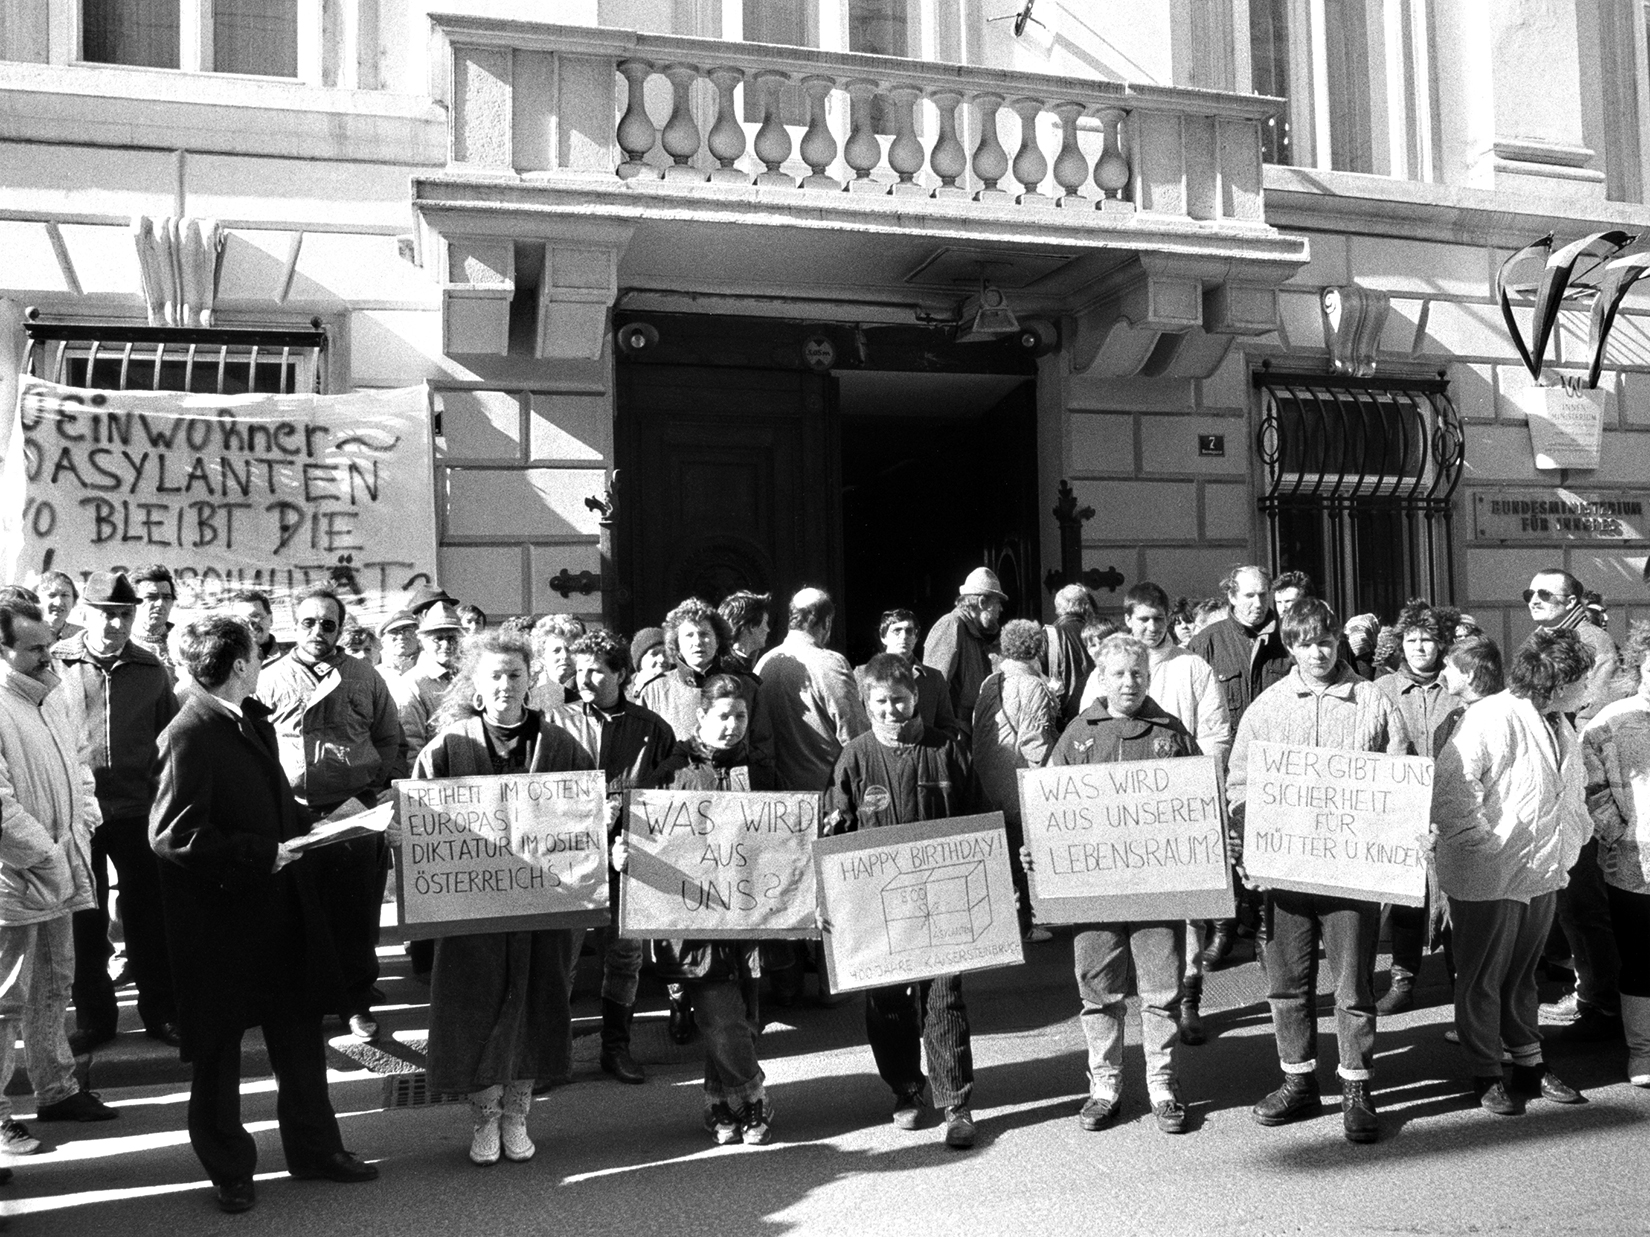 Demonstration gegen die geplante Unterbringung von Asylwerbern in Teilen der Kaserne Kaisersteinbruch, März 1990, Foto: HOPI / APA-Archiv / picturedesk.com 